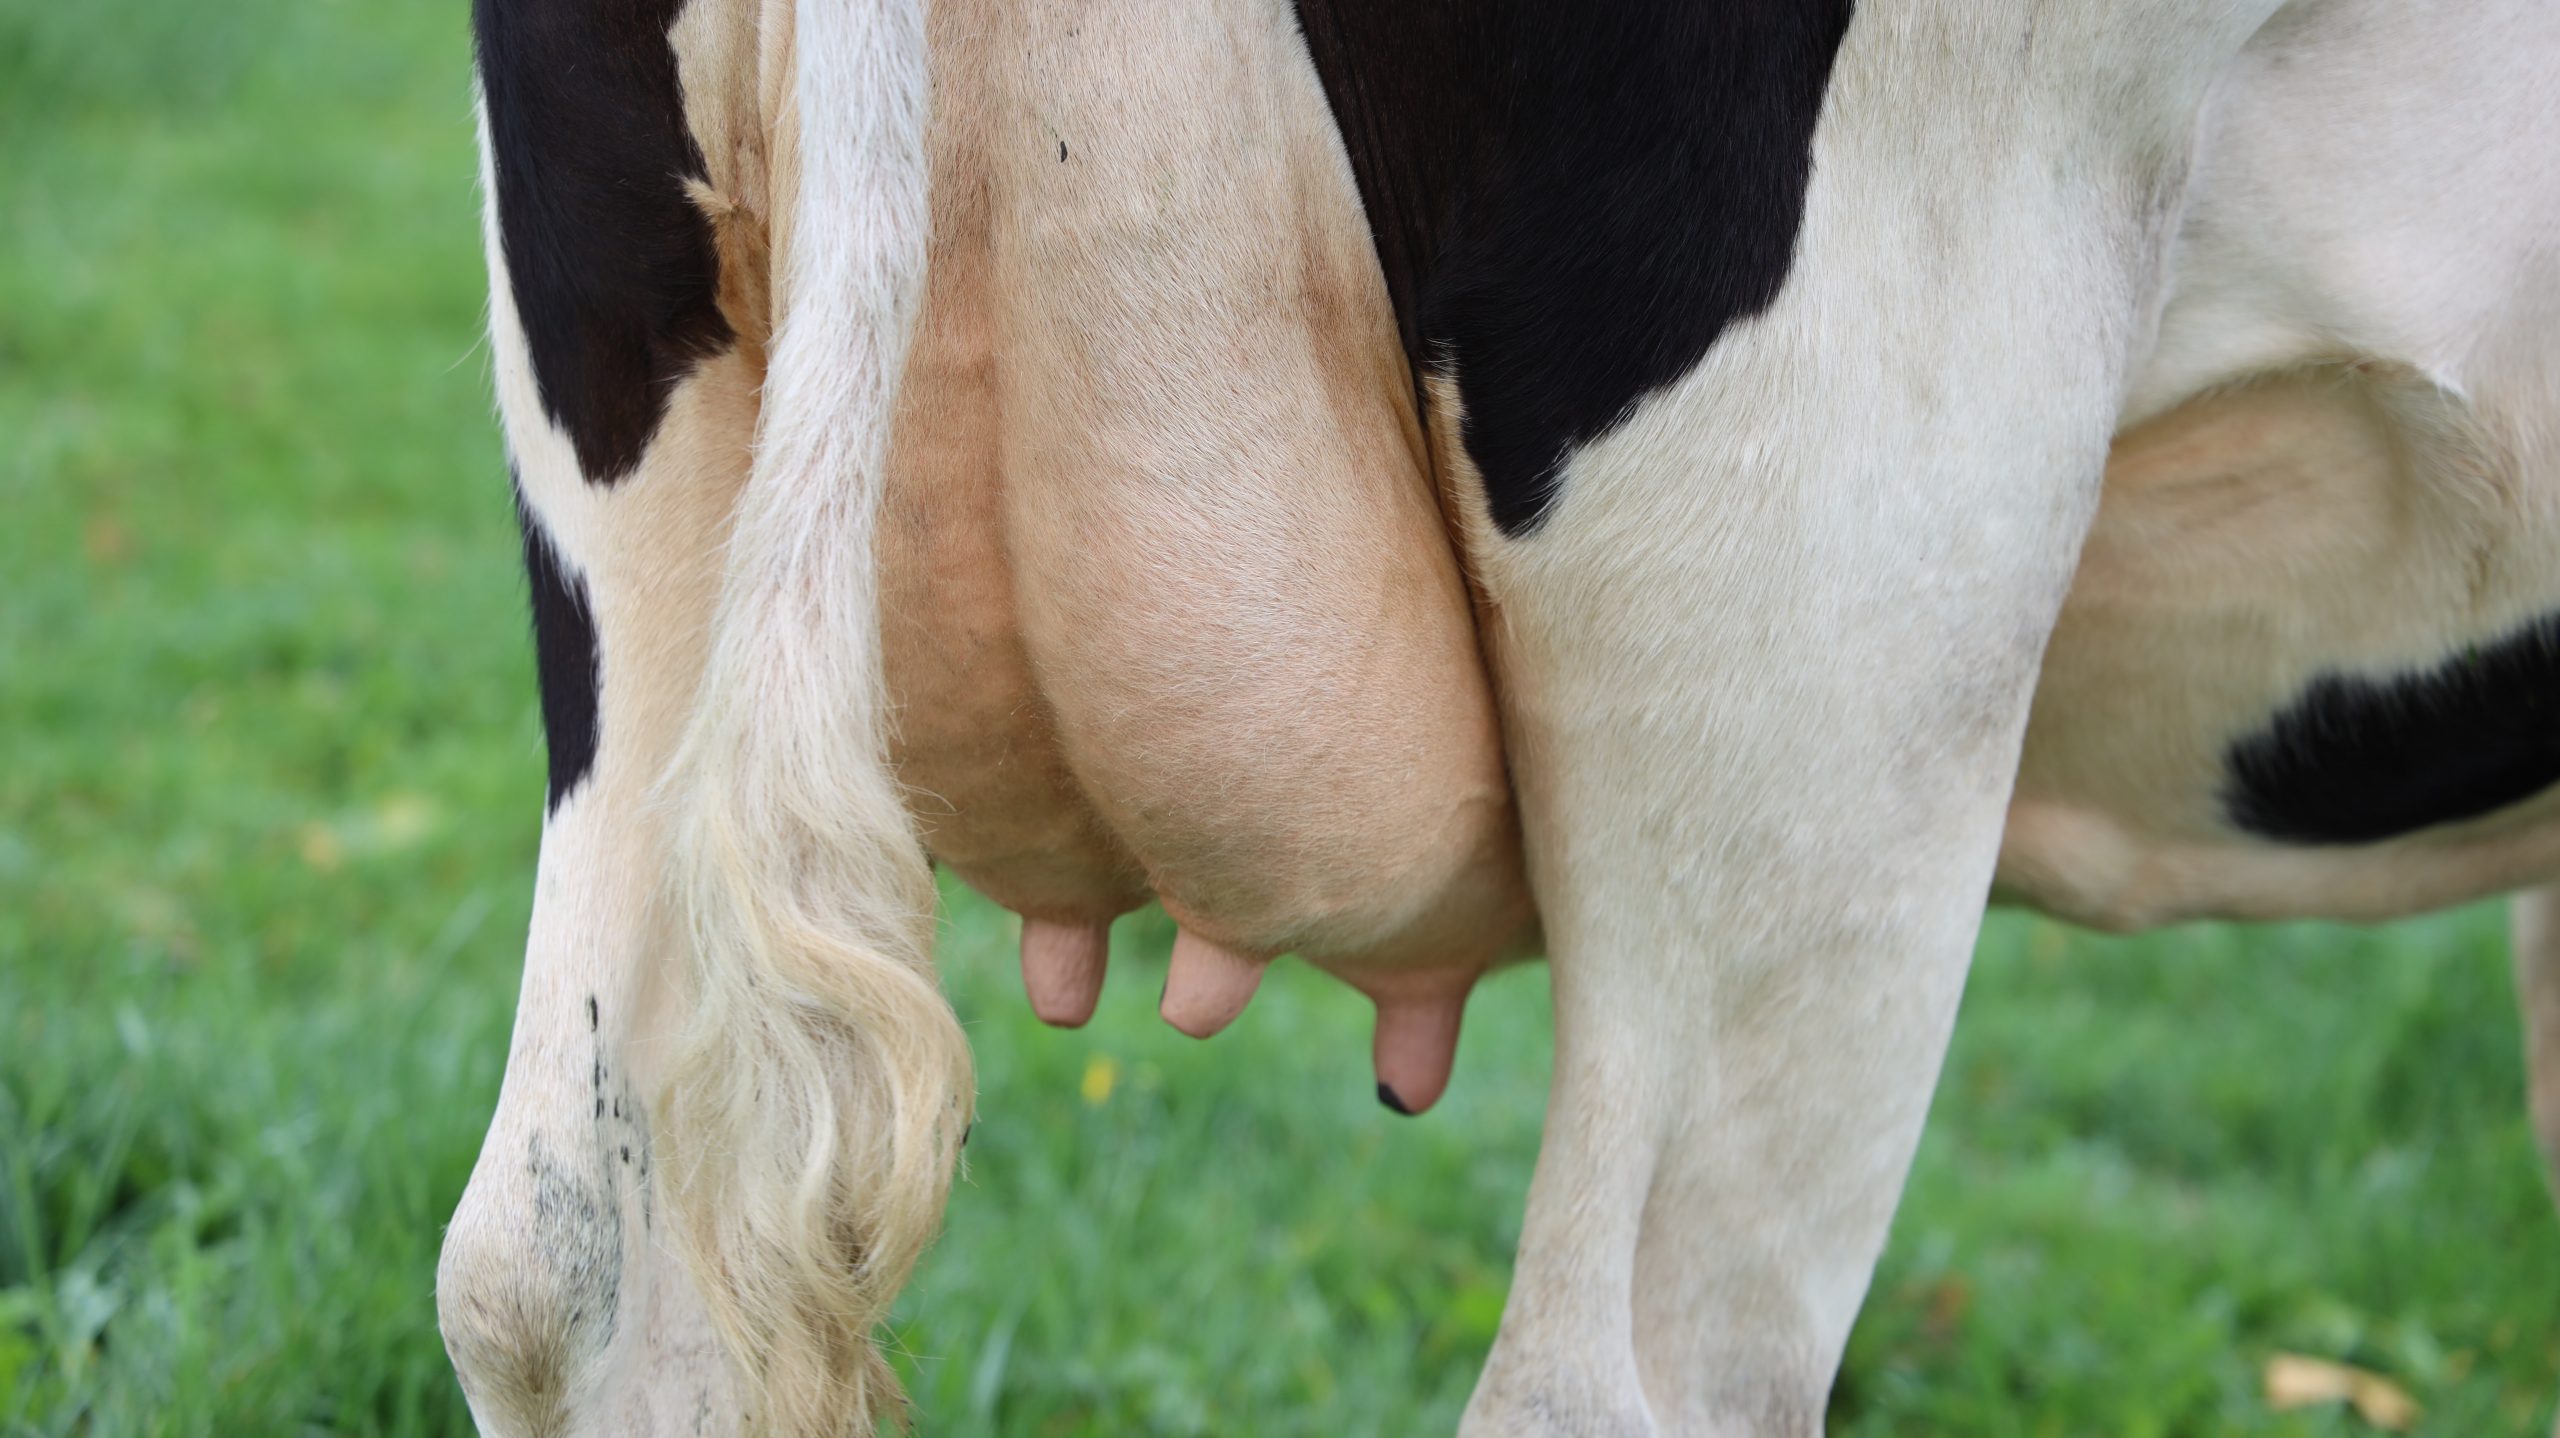 Melkveehouderij: lactatie valt te verlengen